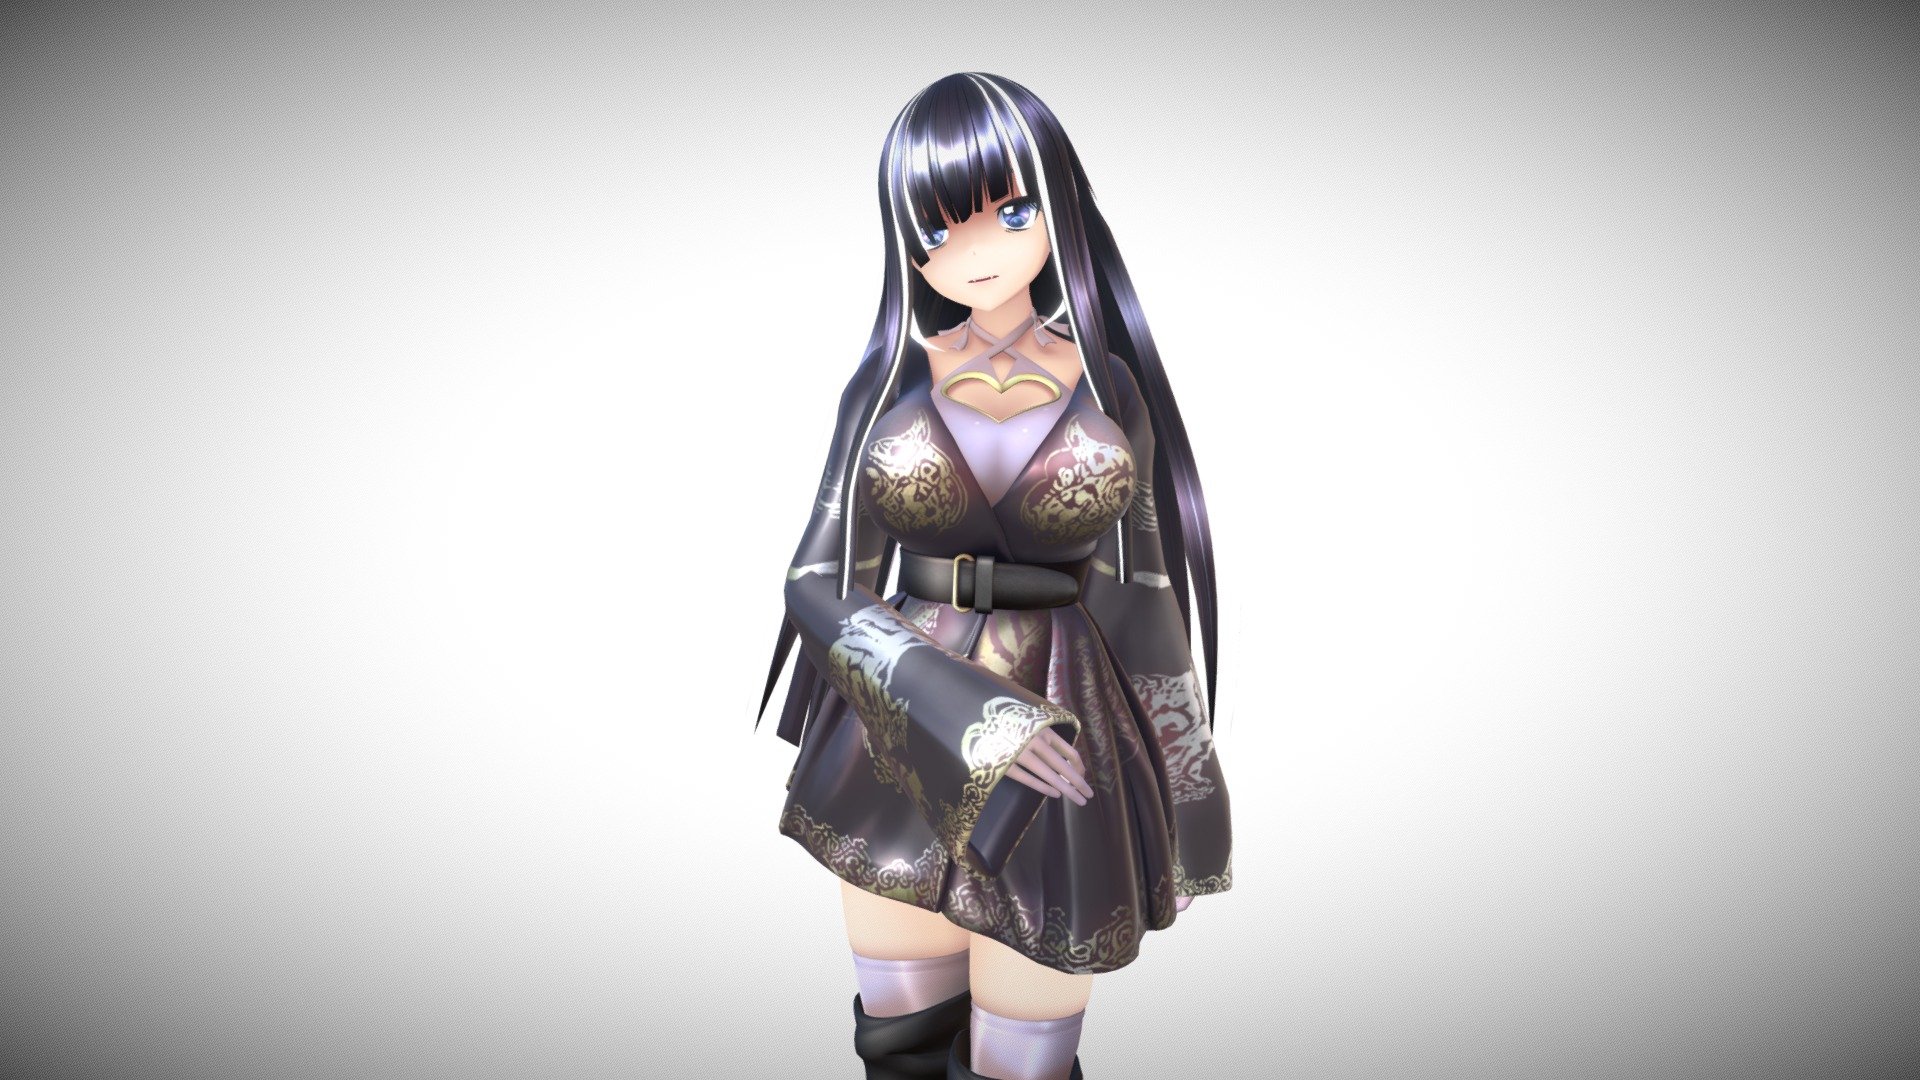 小倉小町 - Download Free 3D model by keiichiisozaki 3d model